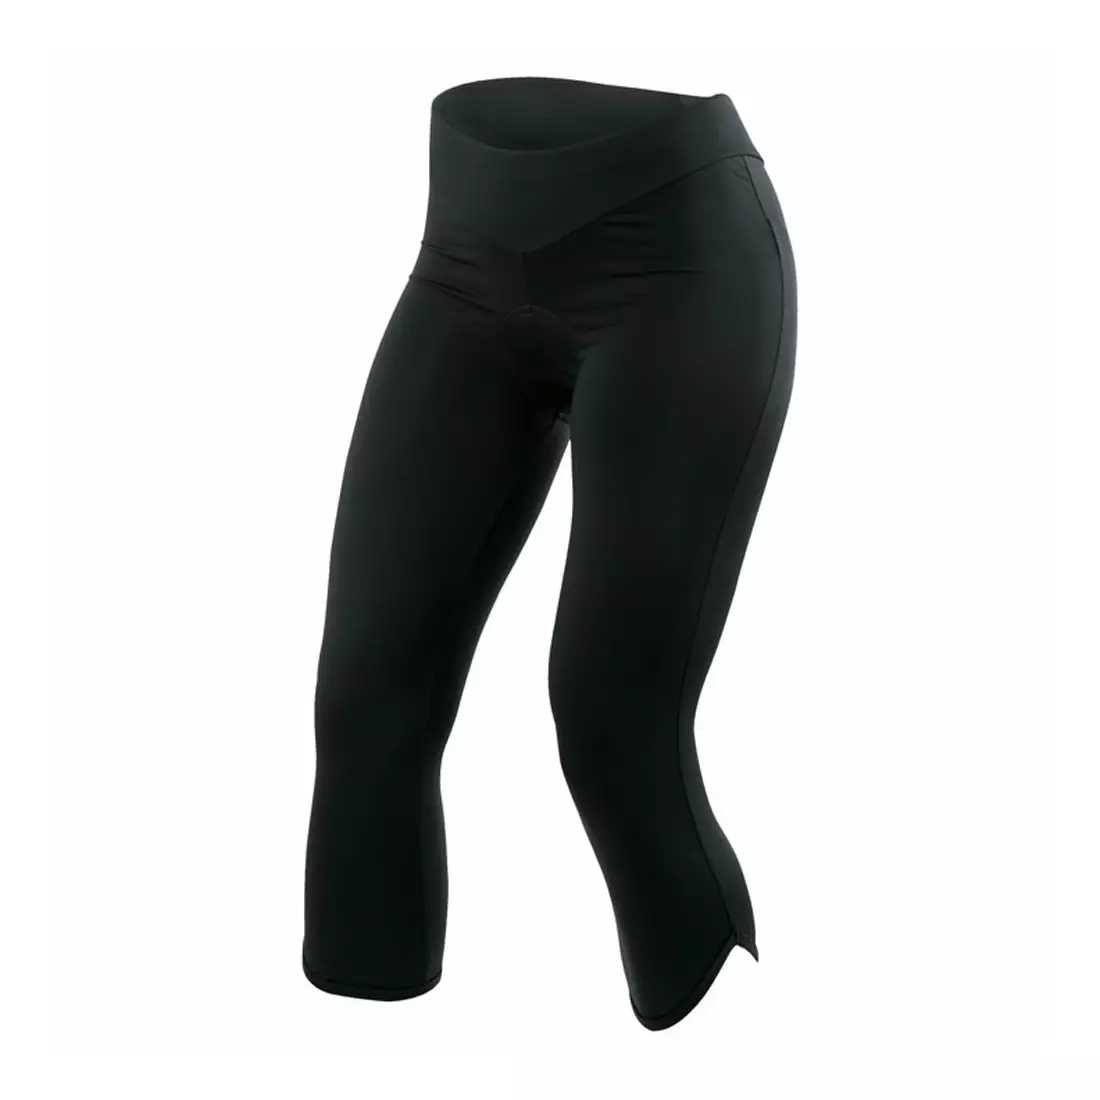 PEARL IZUMI - 11211123 - SUPERSTAR - pantaloni scurți pentru ciclism 3/4 pentru femei